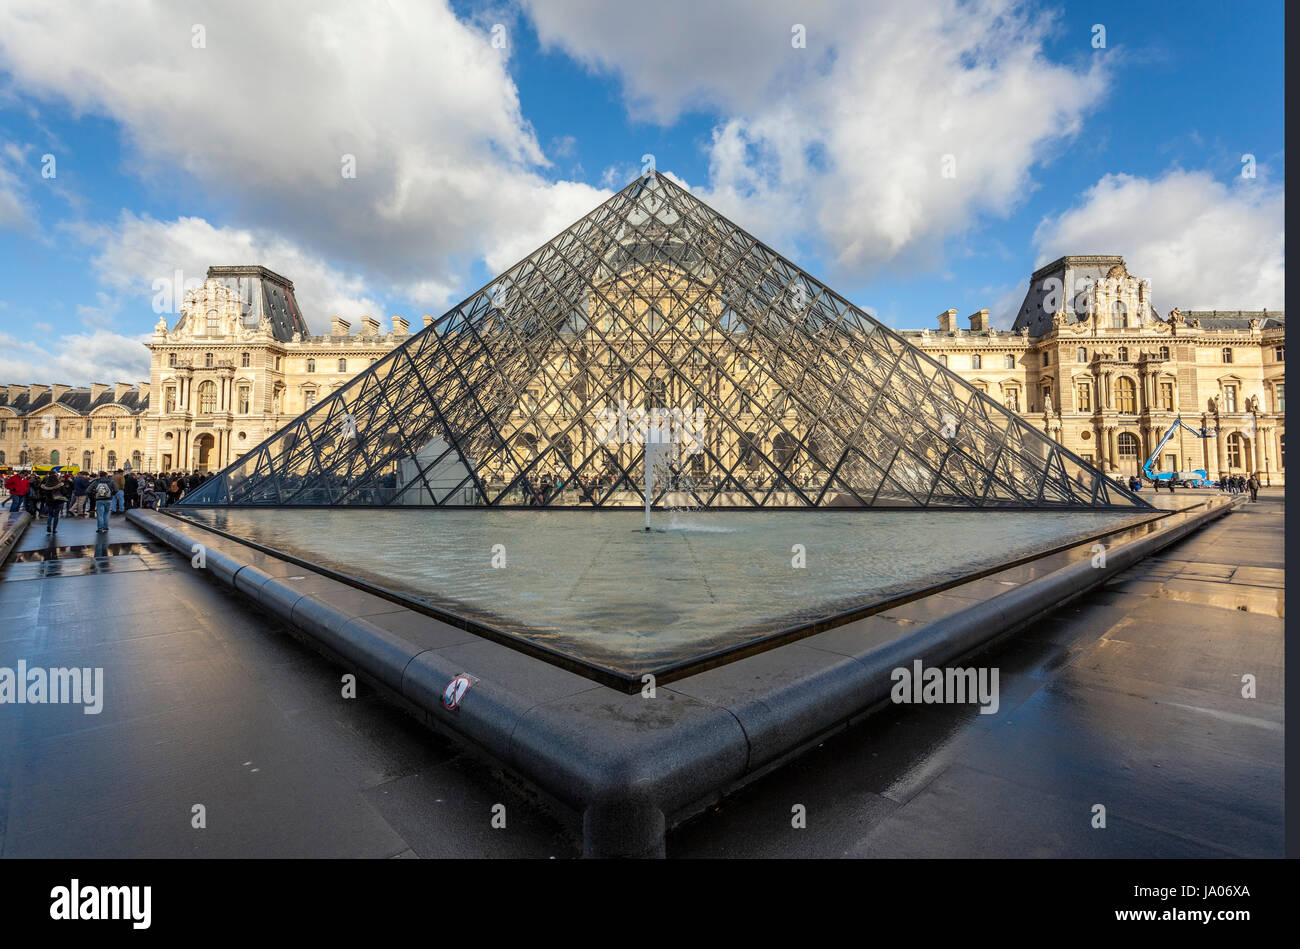 Palazzo del Louvre, galleria d'arte, il museo e la Piramide del Louvre (Pyramide du Louvre), progettato dall architetto cino-americano I.M. Pei in 1989, Parigi, Francia Foto Stock